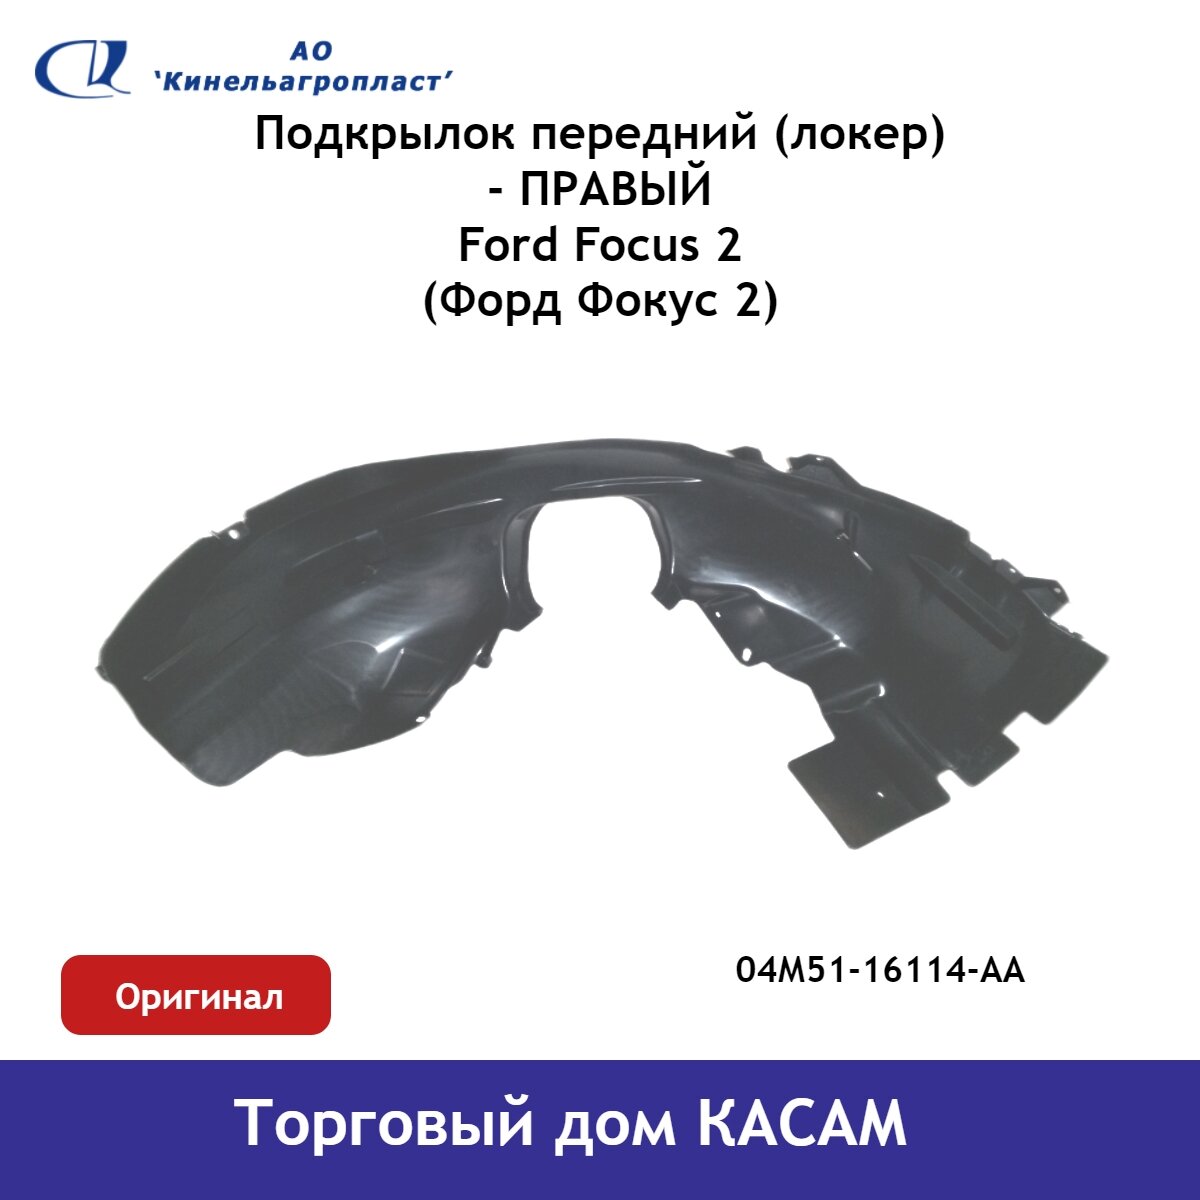 Подкрылок передний (локер) Ford Focus (Форд Фокус) 2 правый оригинал